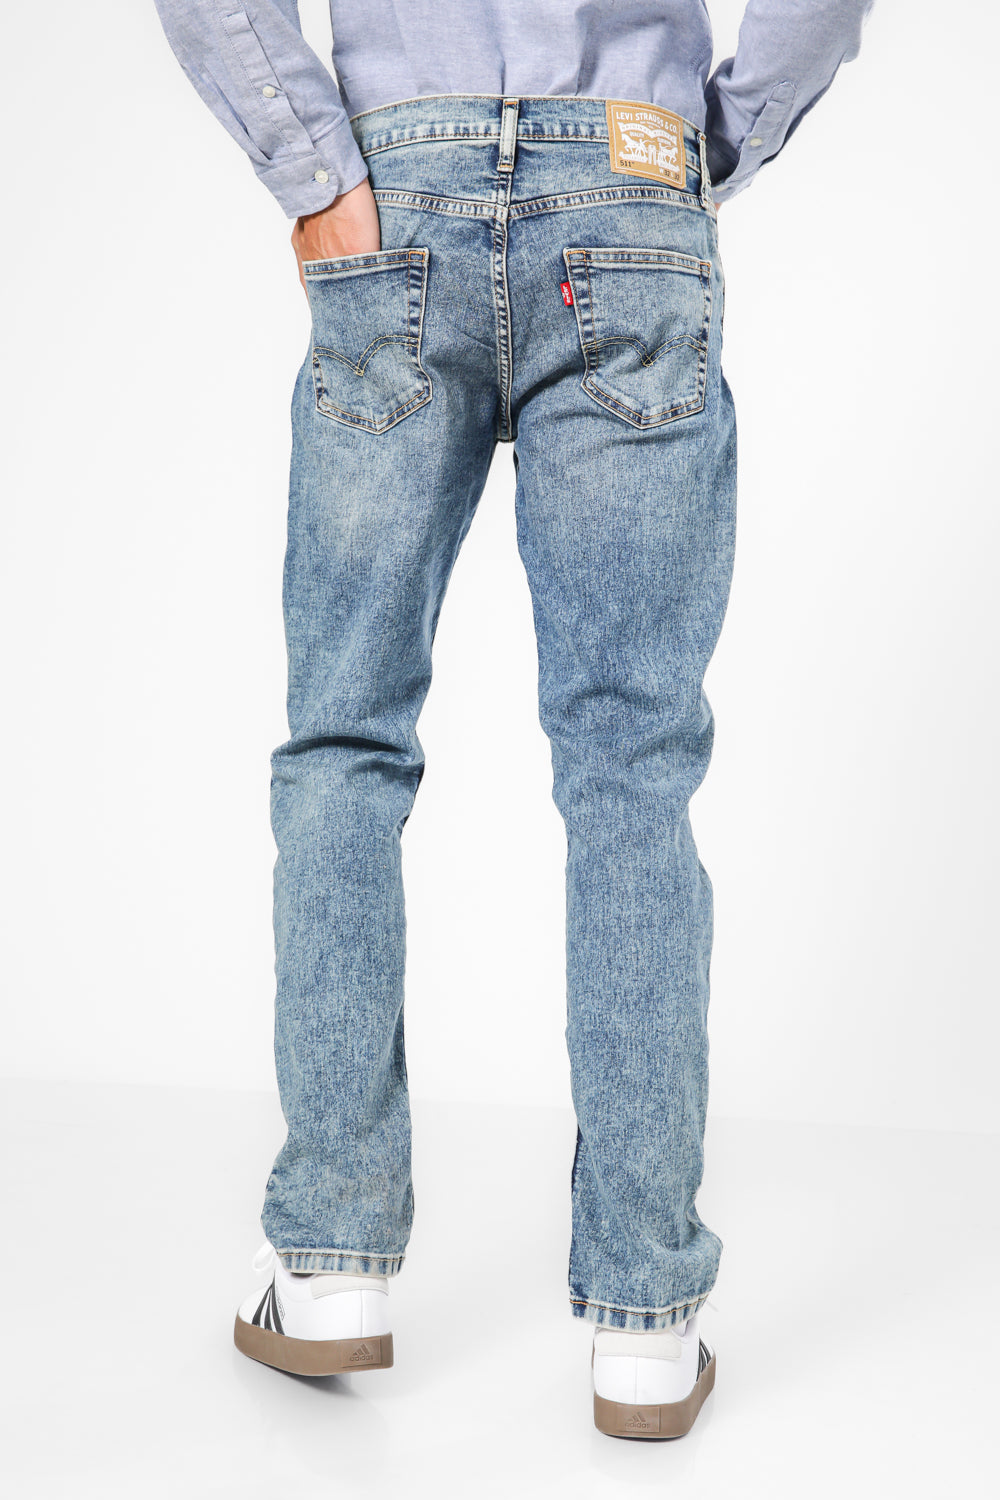 ג'ינס MFL 511 בצבע כחול בהיר